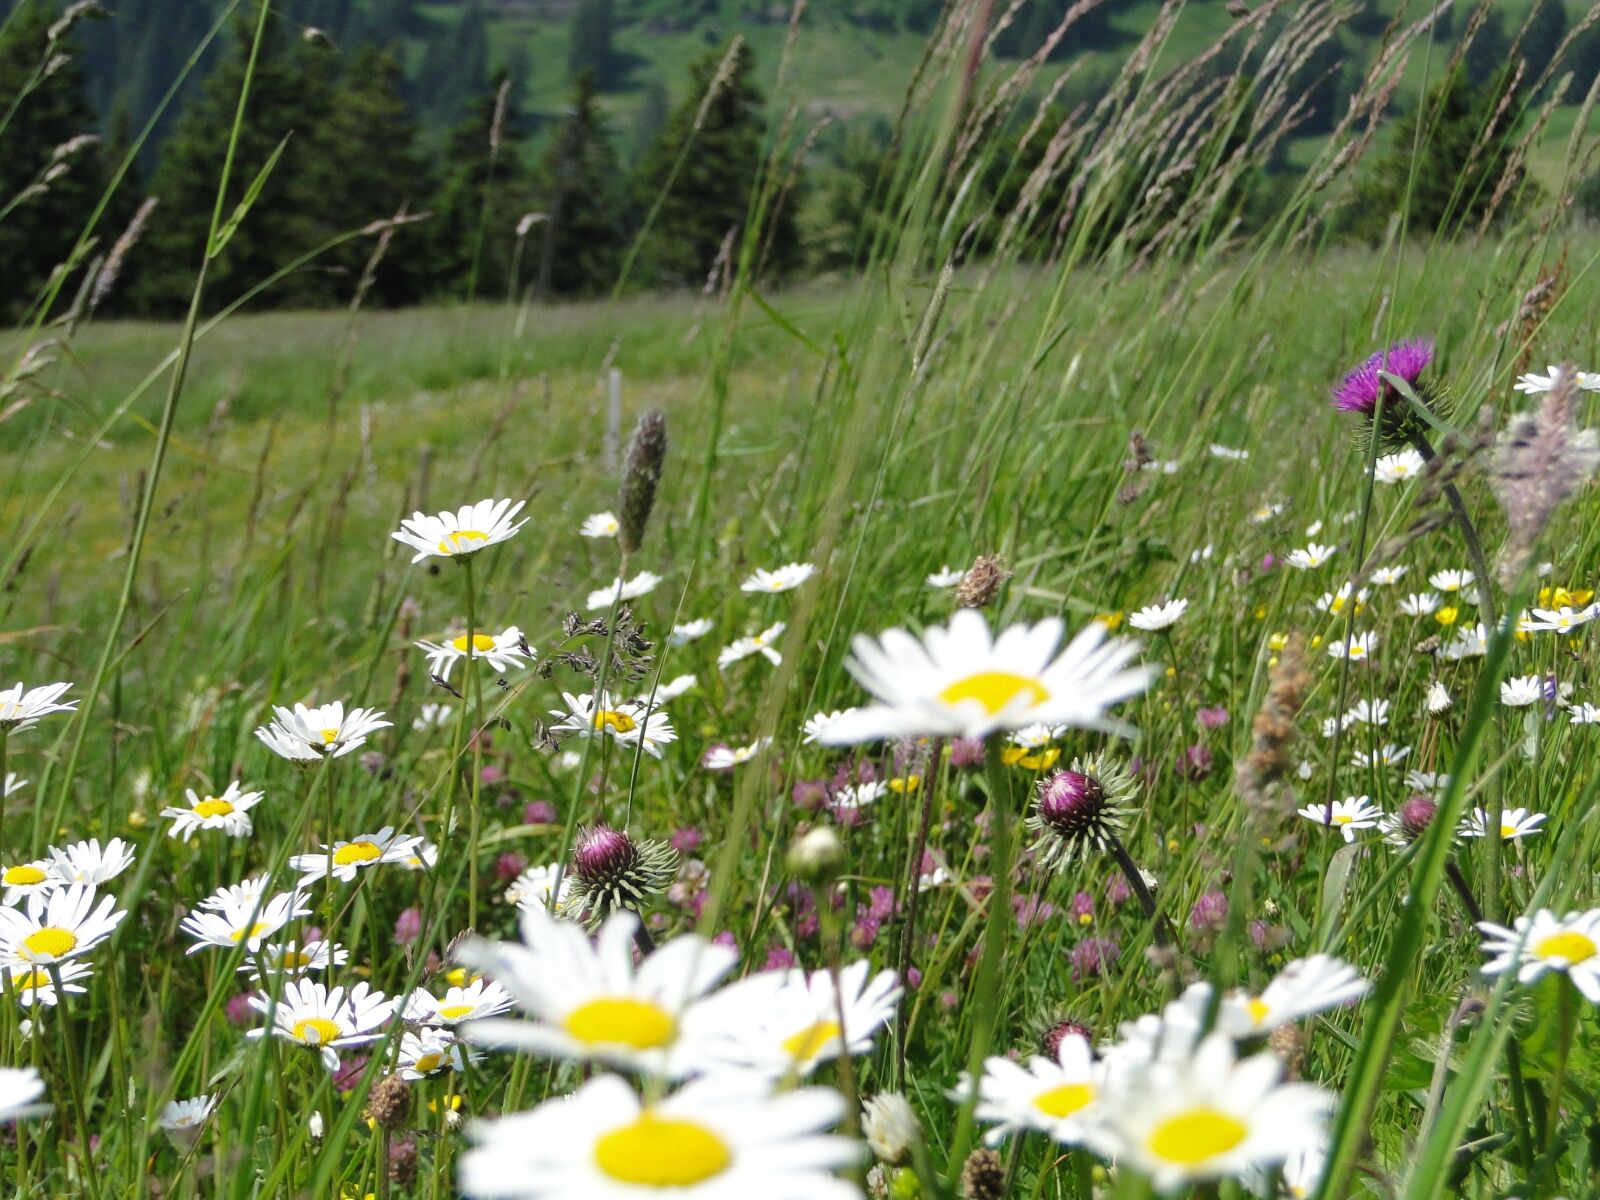 Sony Cyber-shot DSC-HX1 sample photo. Summer meadow, flower meadow photography